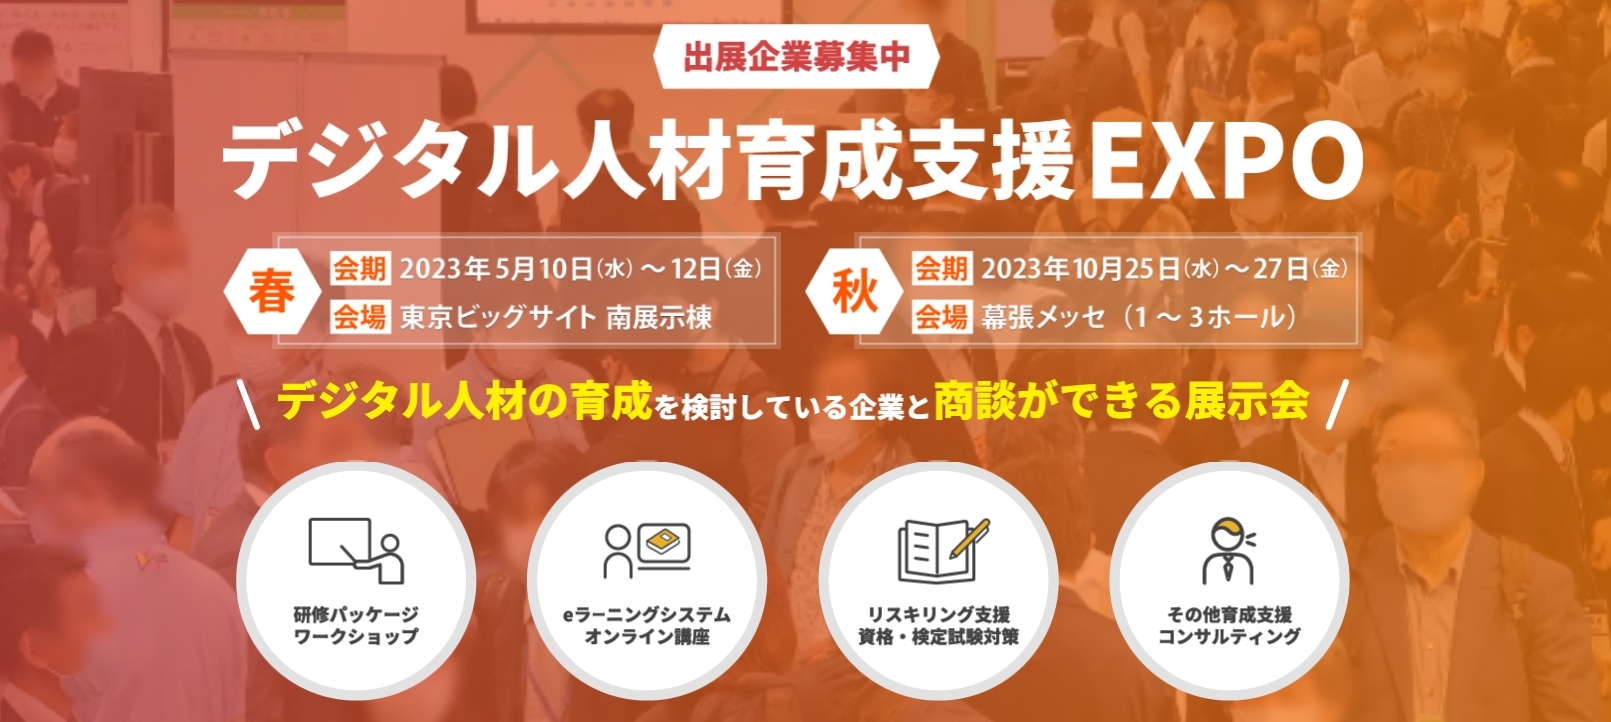 第2回デジタル人材育成支援EXPO春